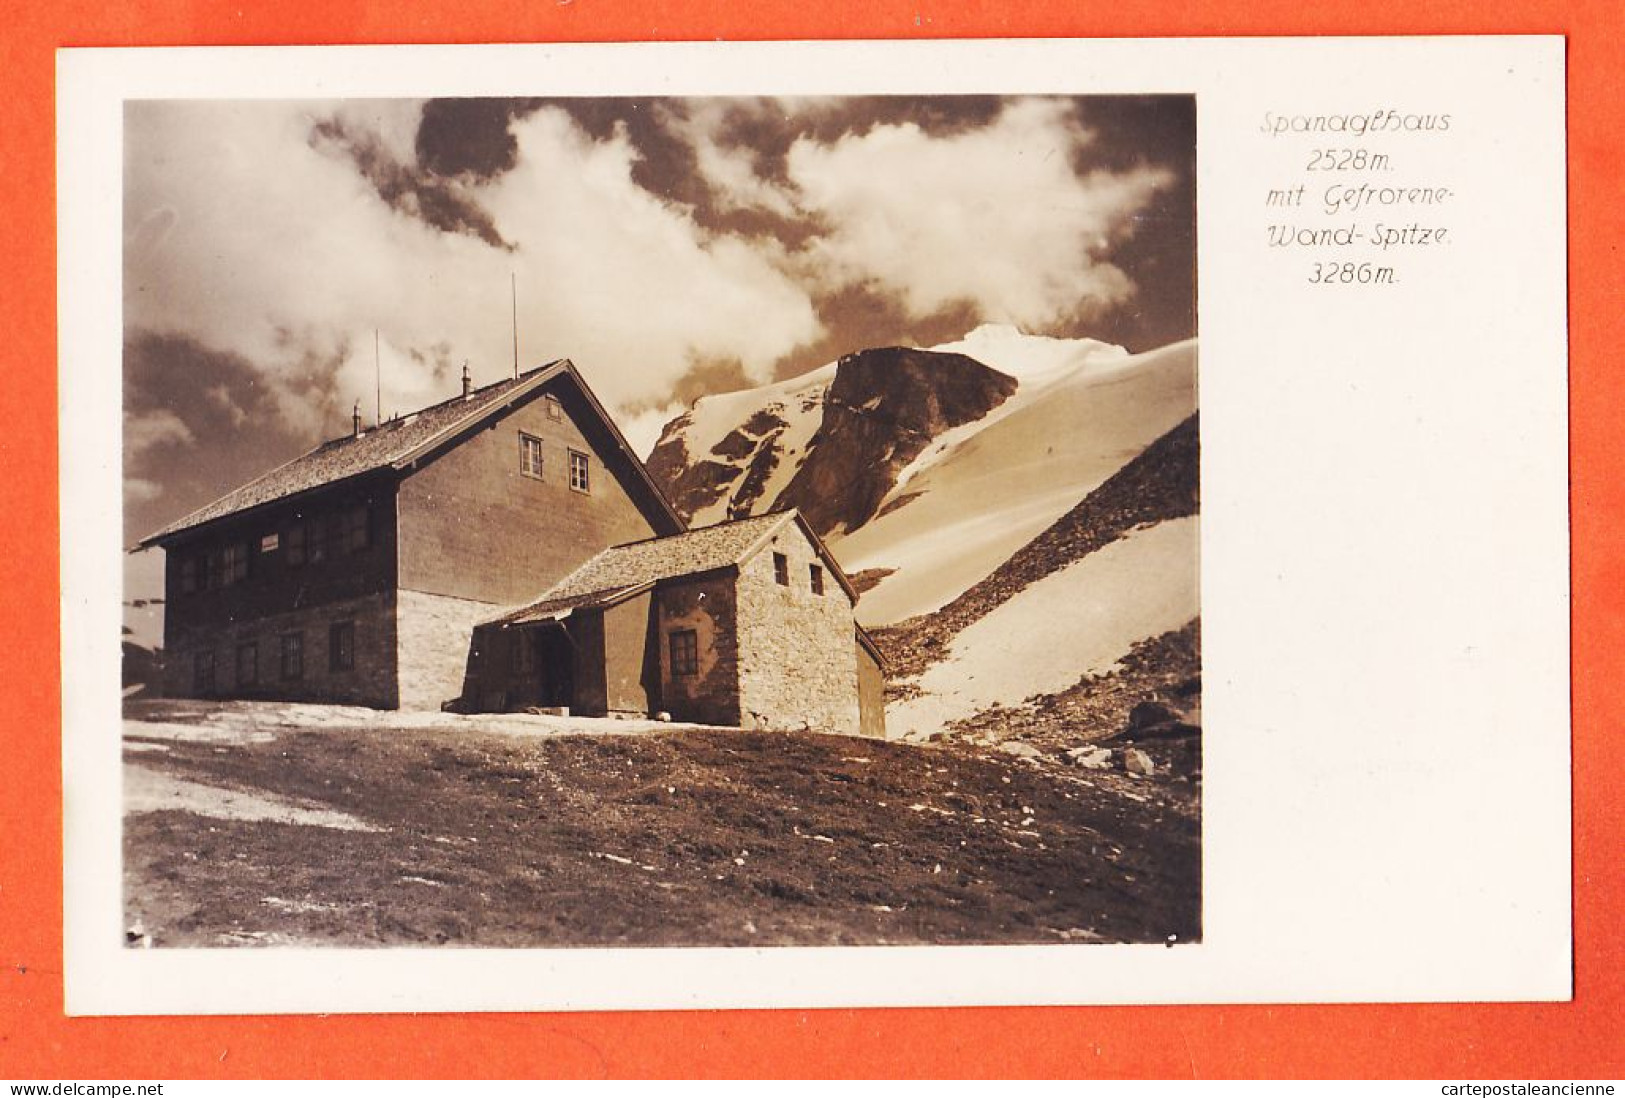 6961 / ⭐ SPANAGEL-HAUS Tyrol Tux Berghaus Spanaglhaus Gefrorener Wand Zillertaler Alpen 1940s Foto LANNERSBACH  - Schwaz